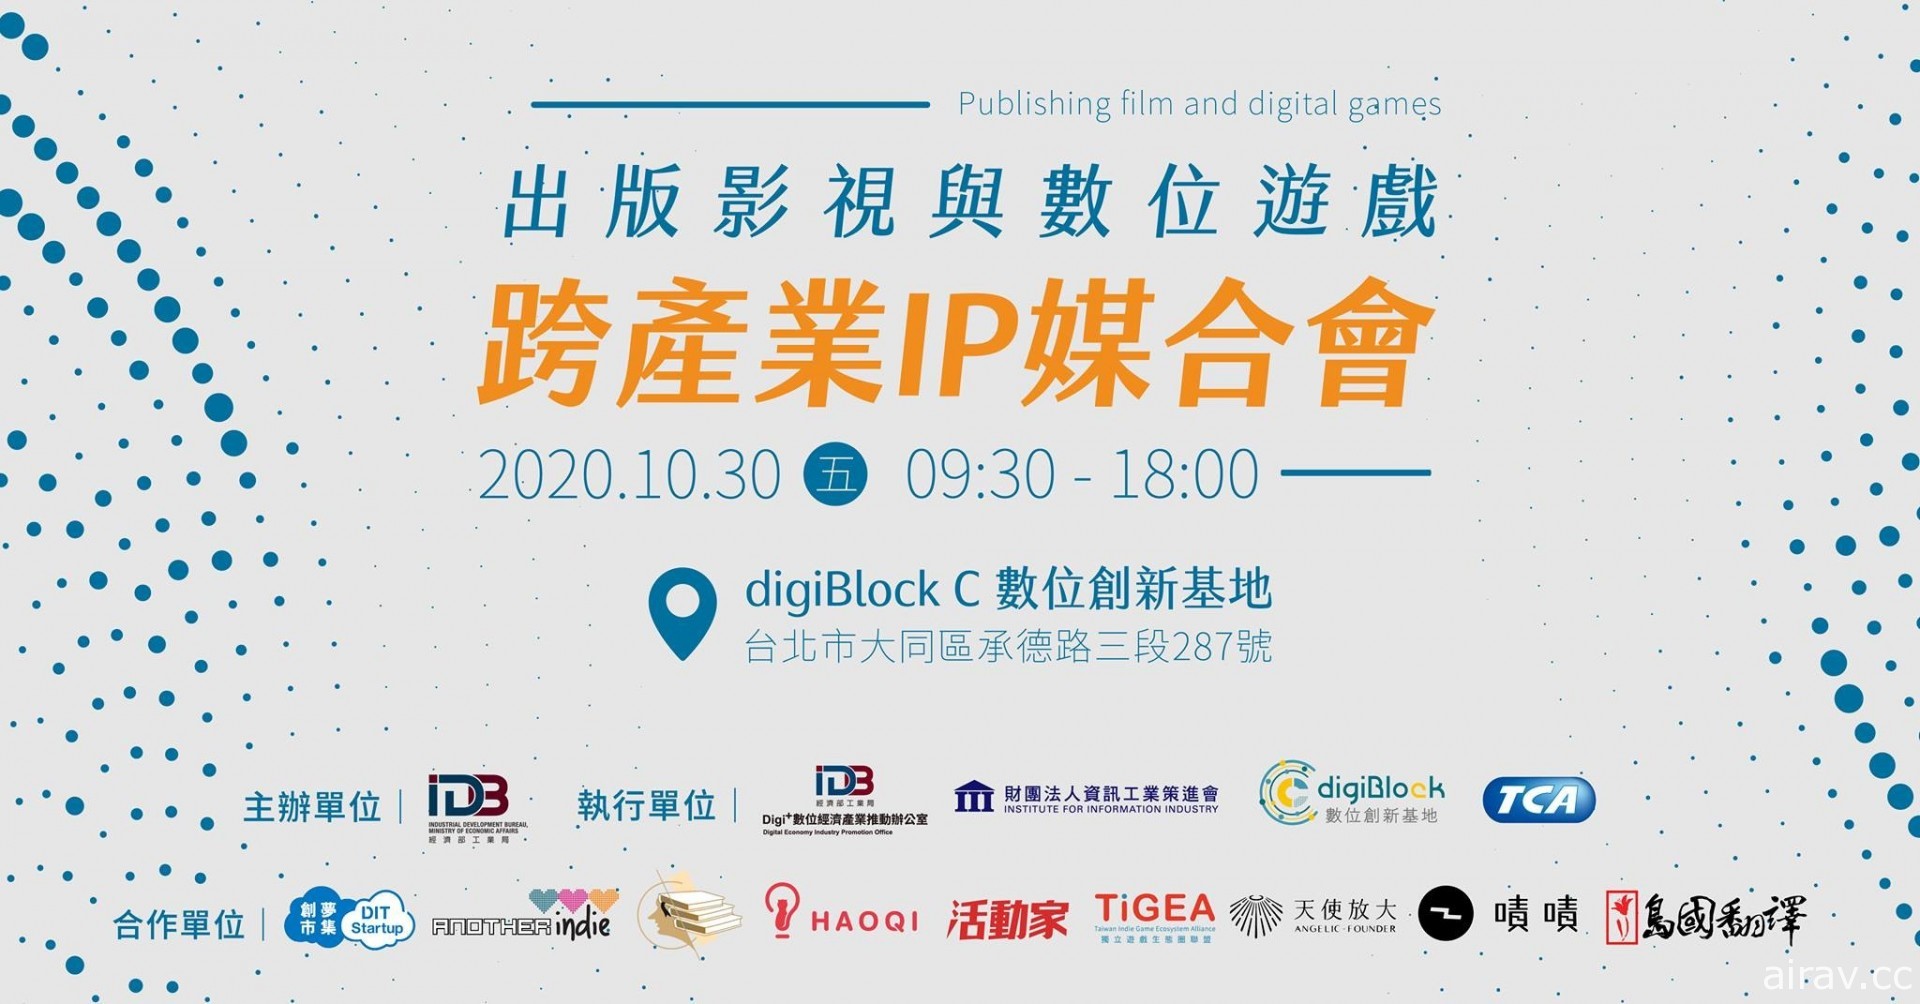 原創獨立遊戲開發者與生態圈聯盟將舉行「出版影視與數位遊戲跨產業 IP 媒合會」